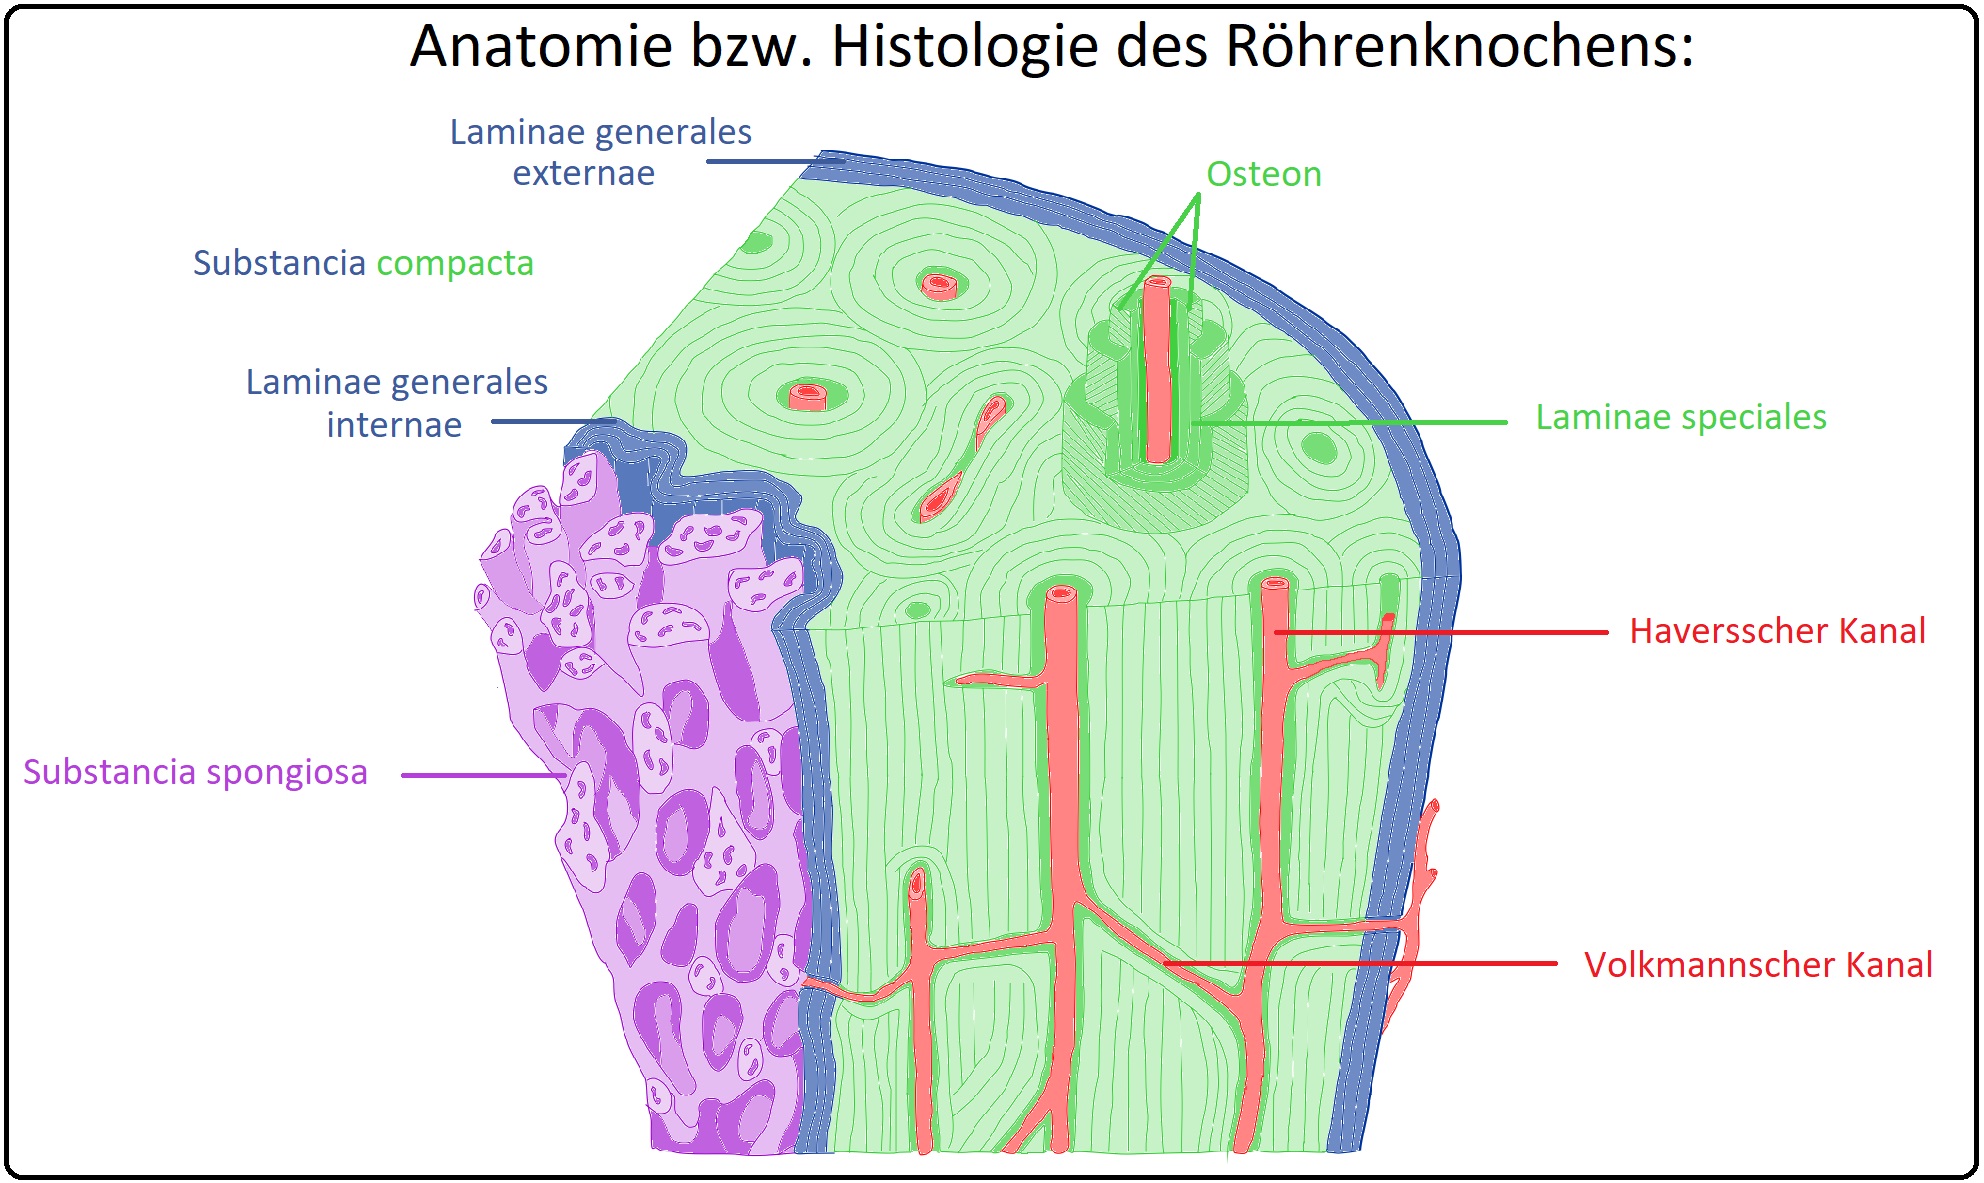 643 Anatomie bzw. Histologie des Röhrenknochens